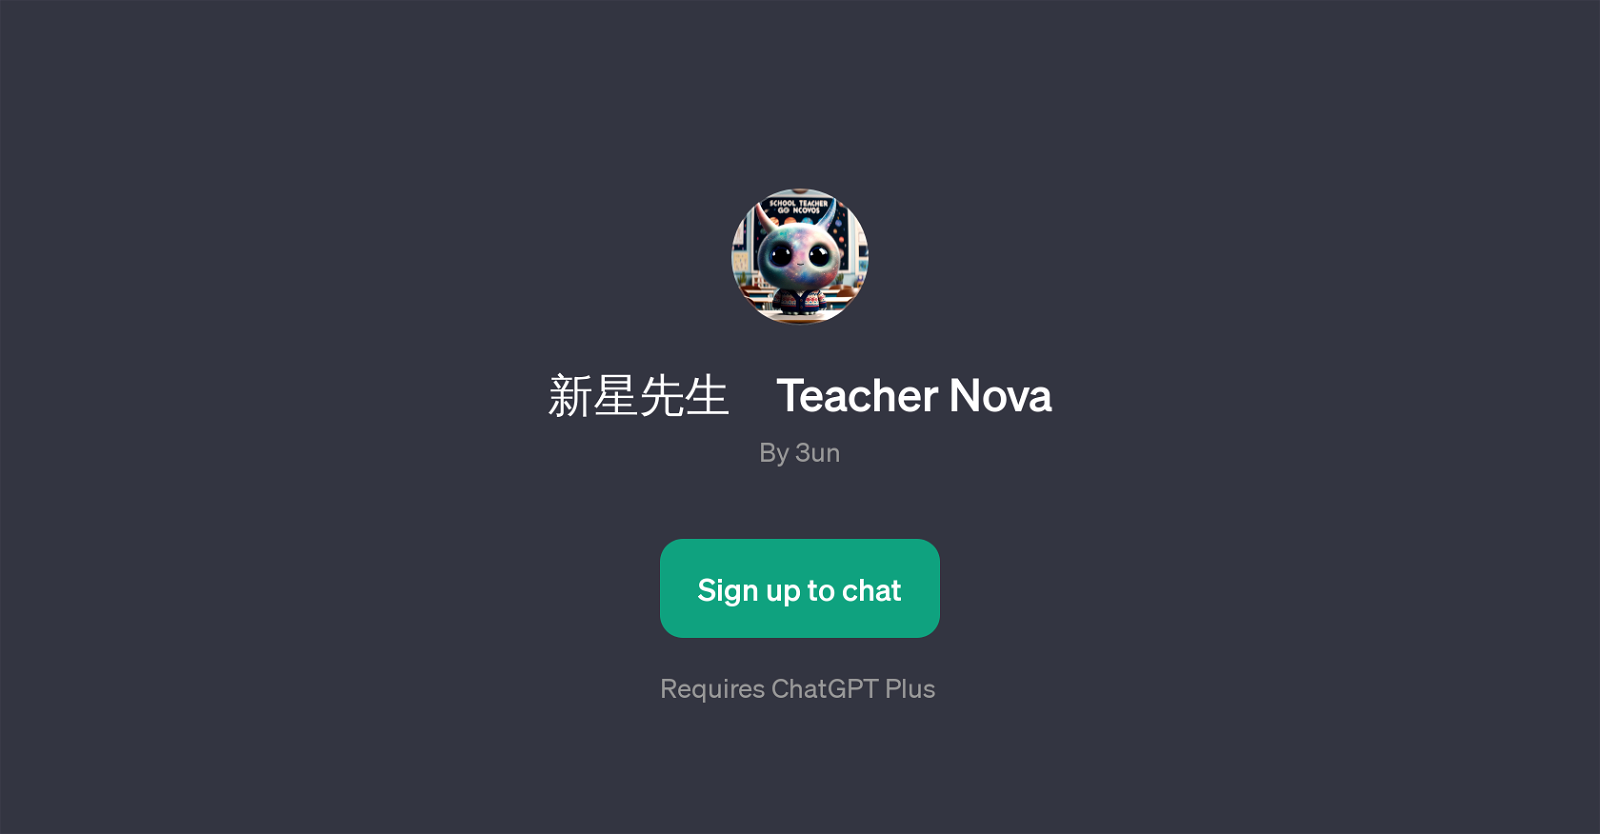 Teacher Nova website